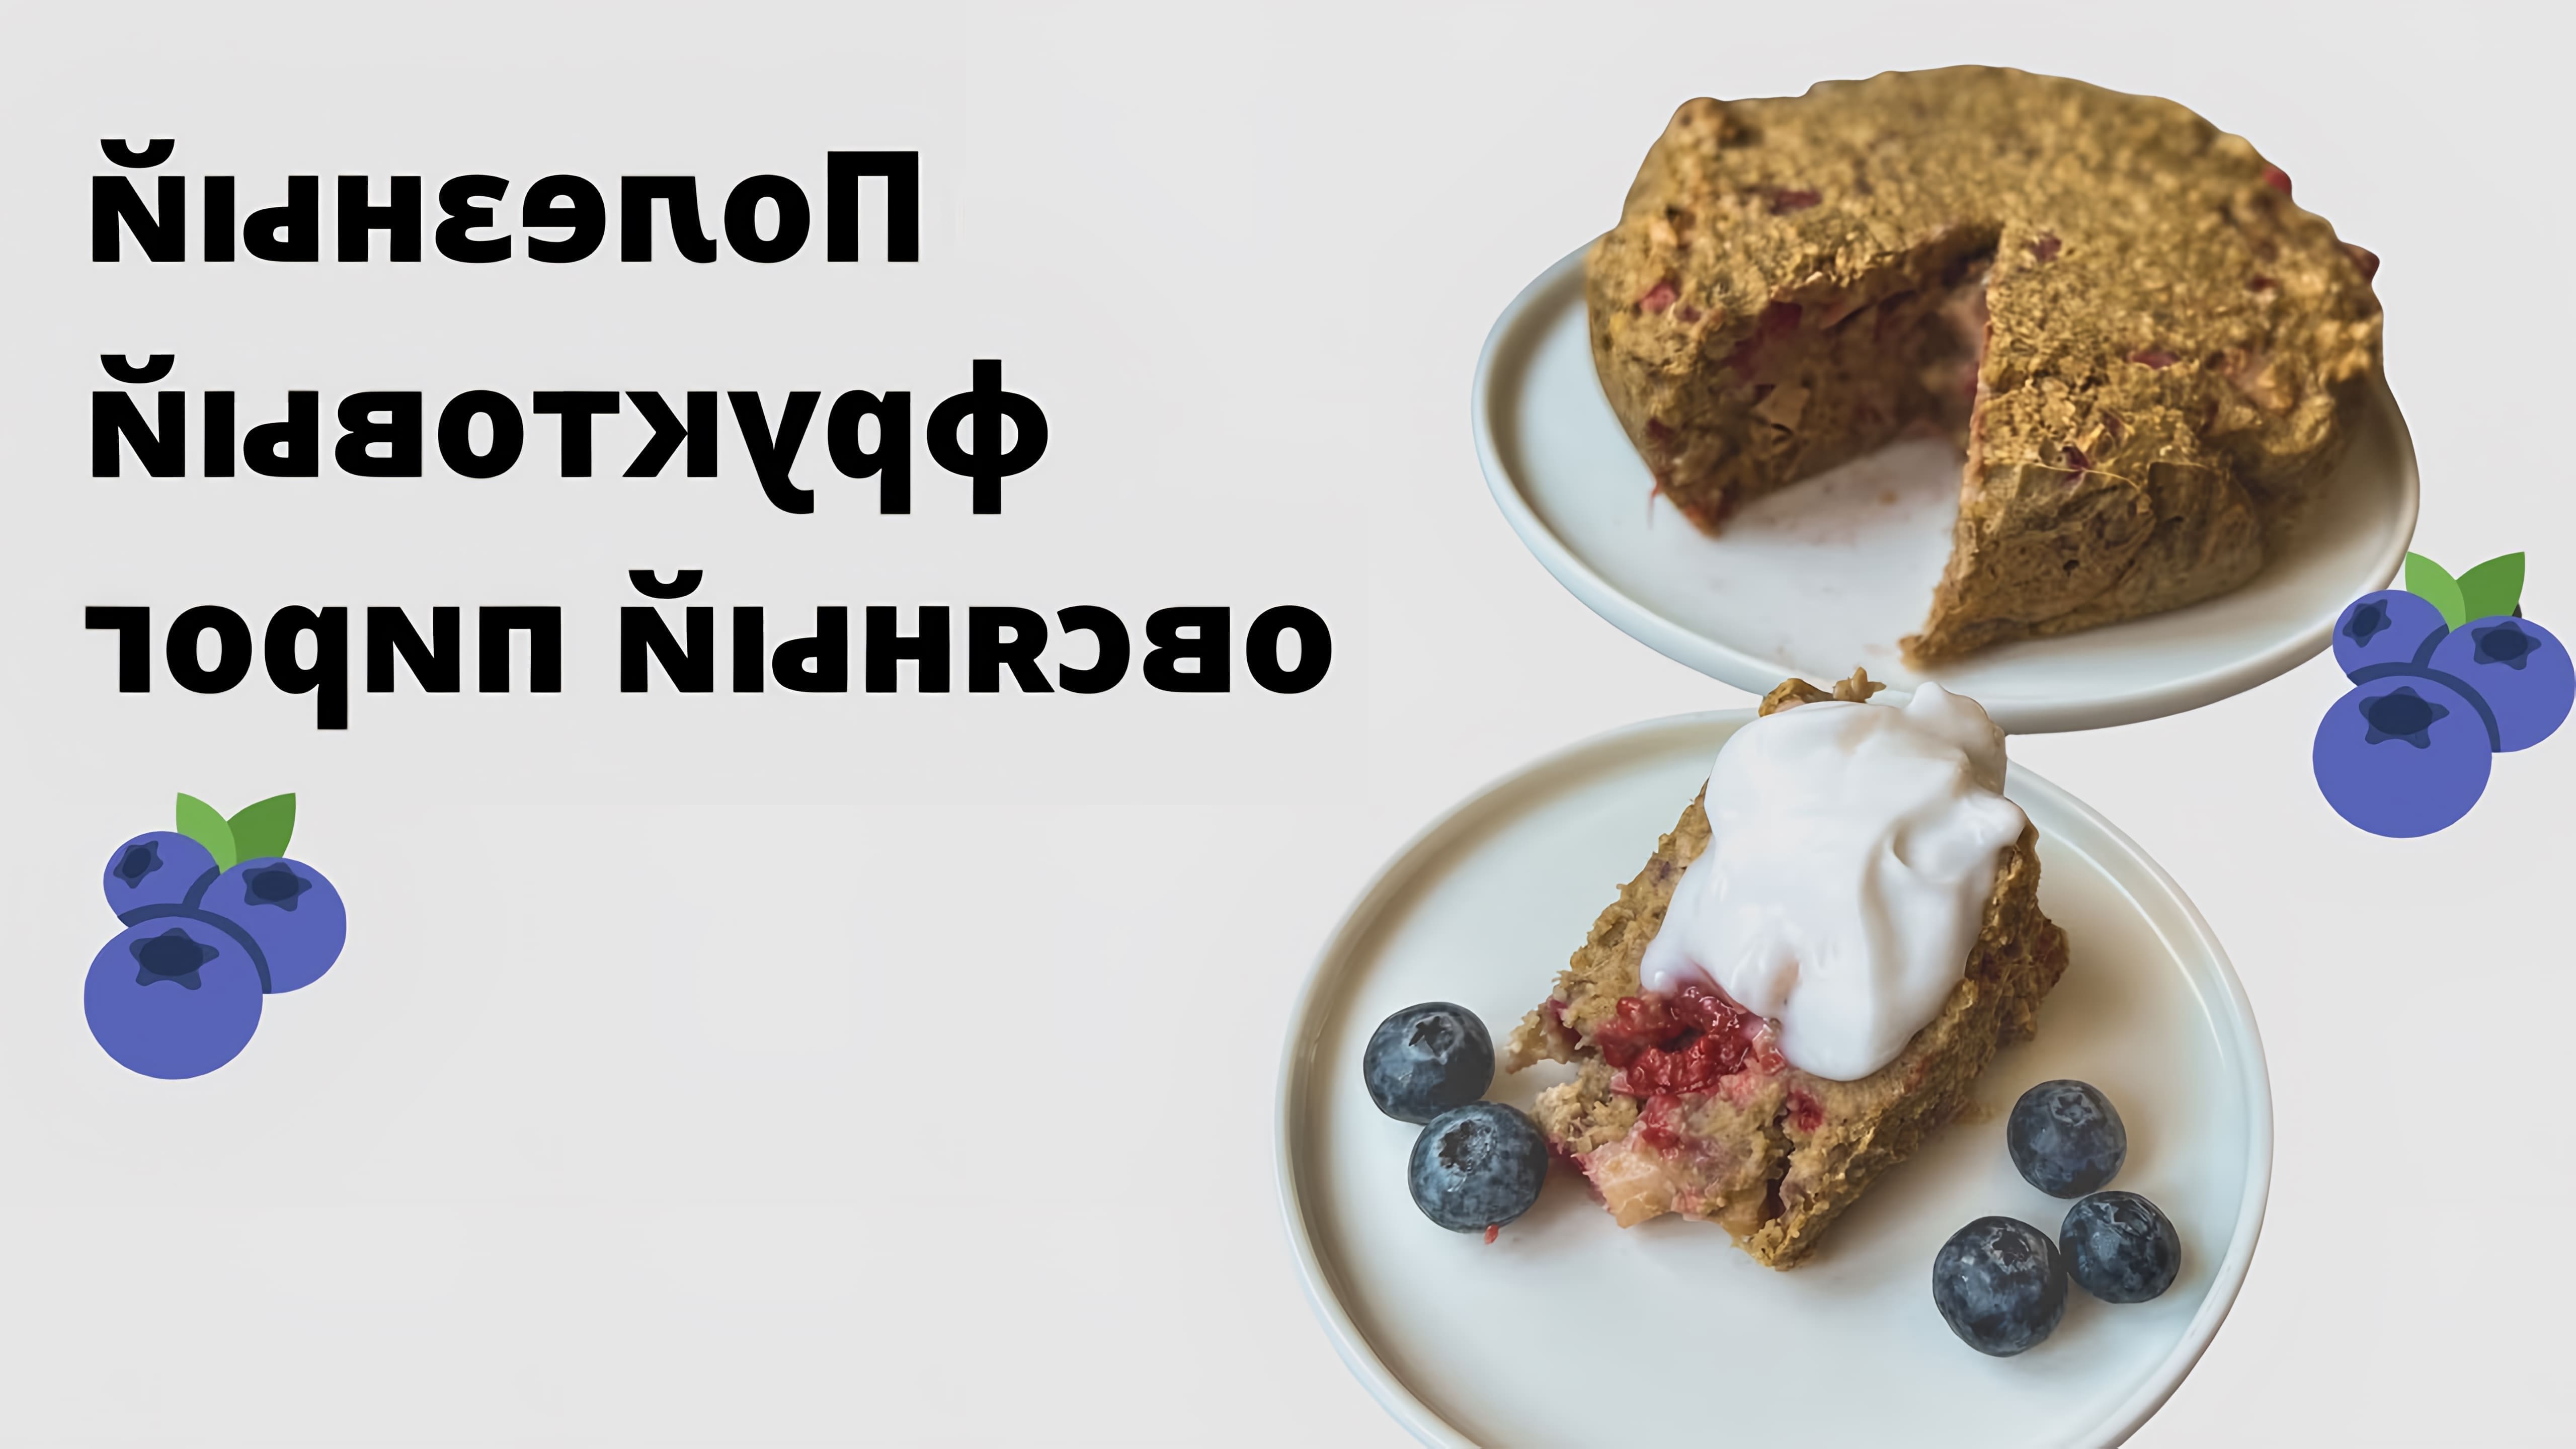 В этом видео демонстрируется рецепт полезного овсяного пирога с ревенем и малиной